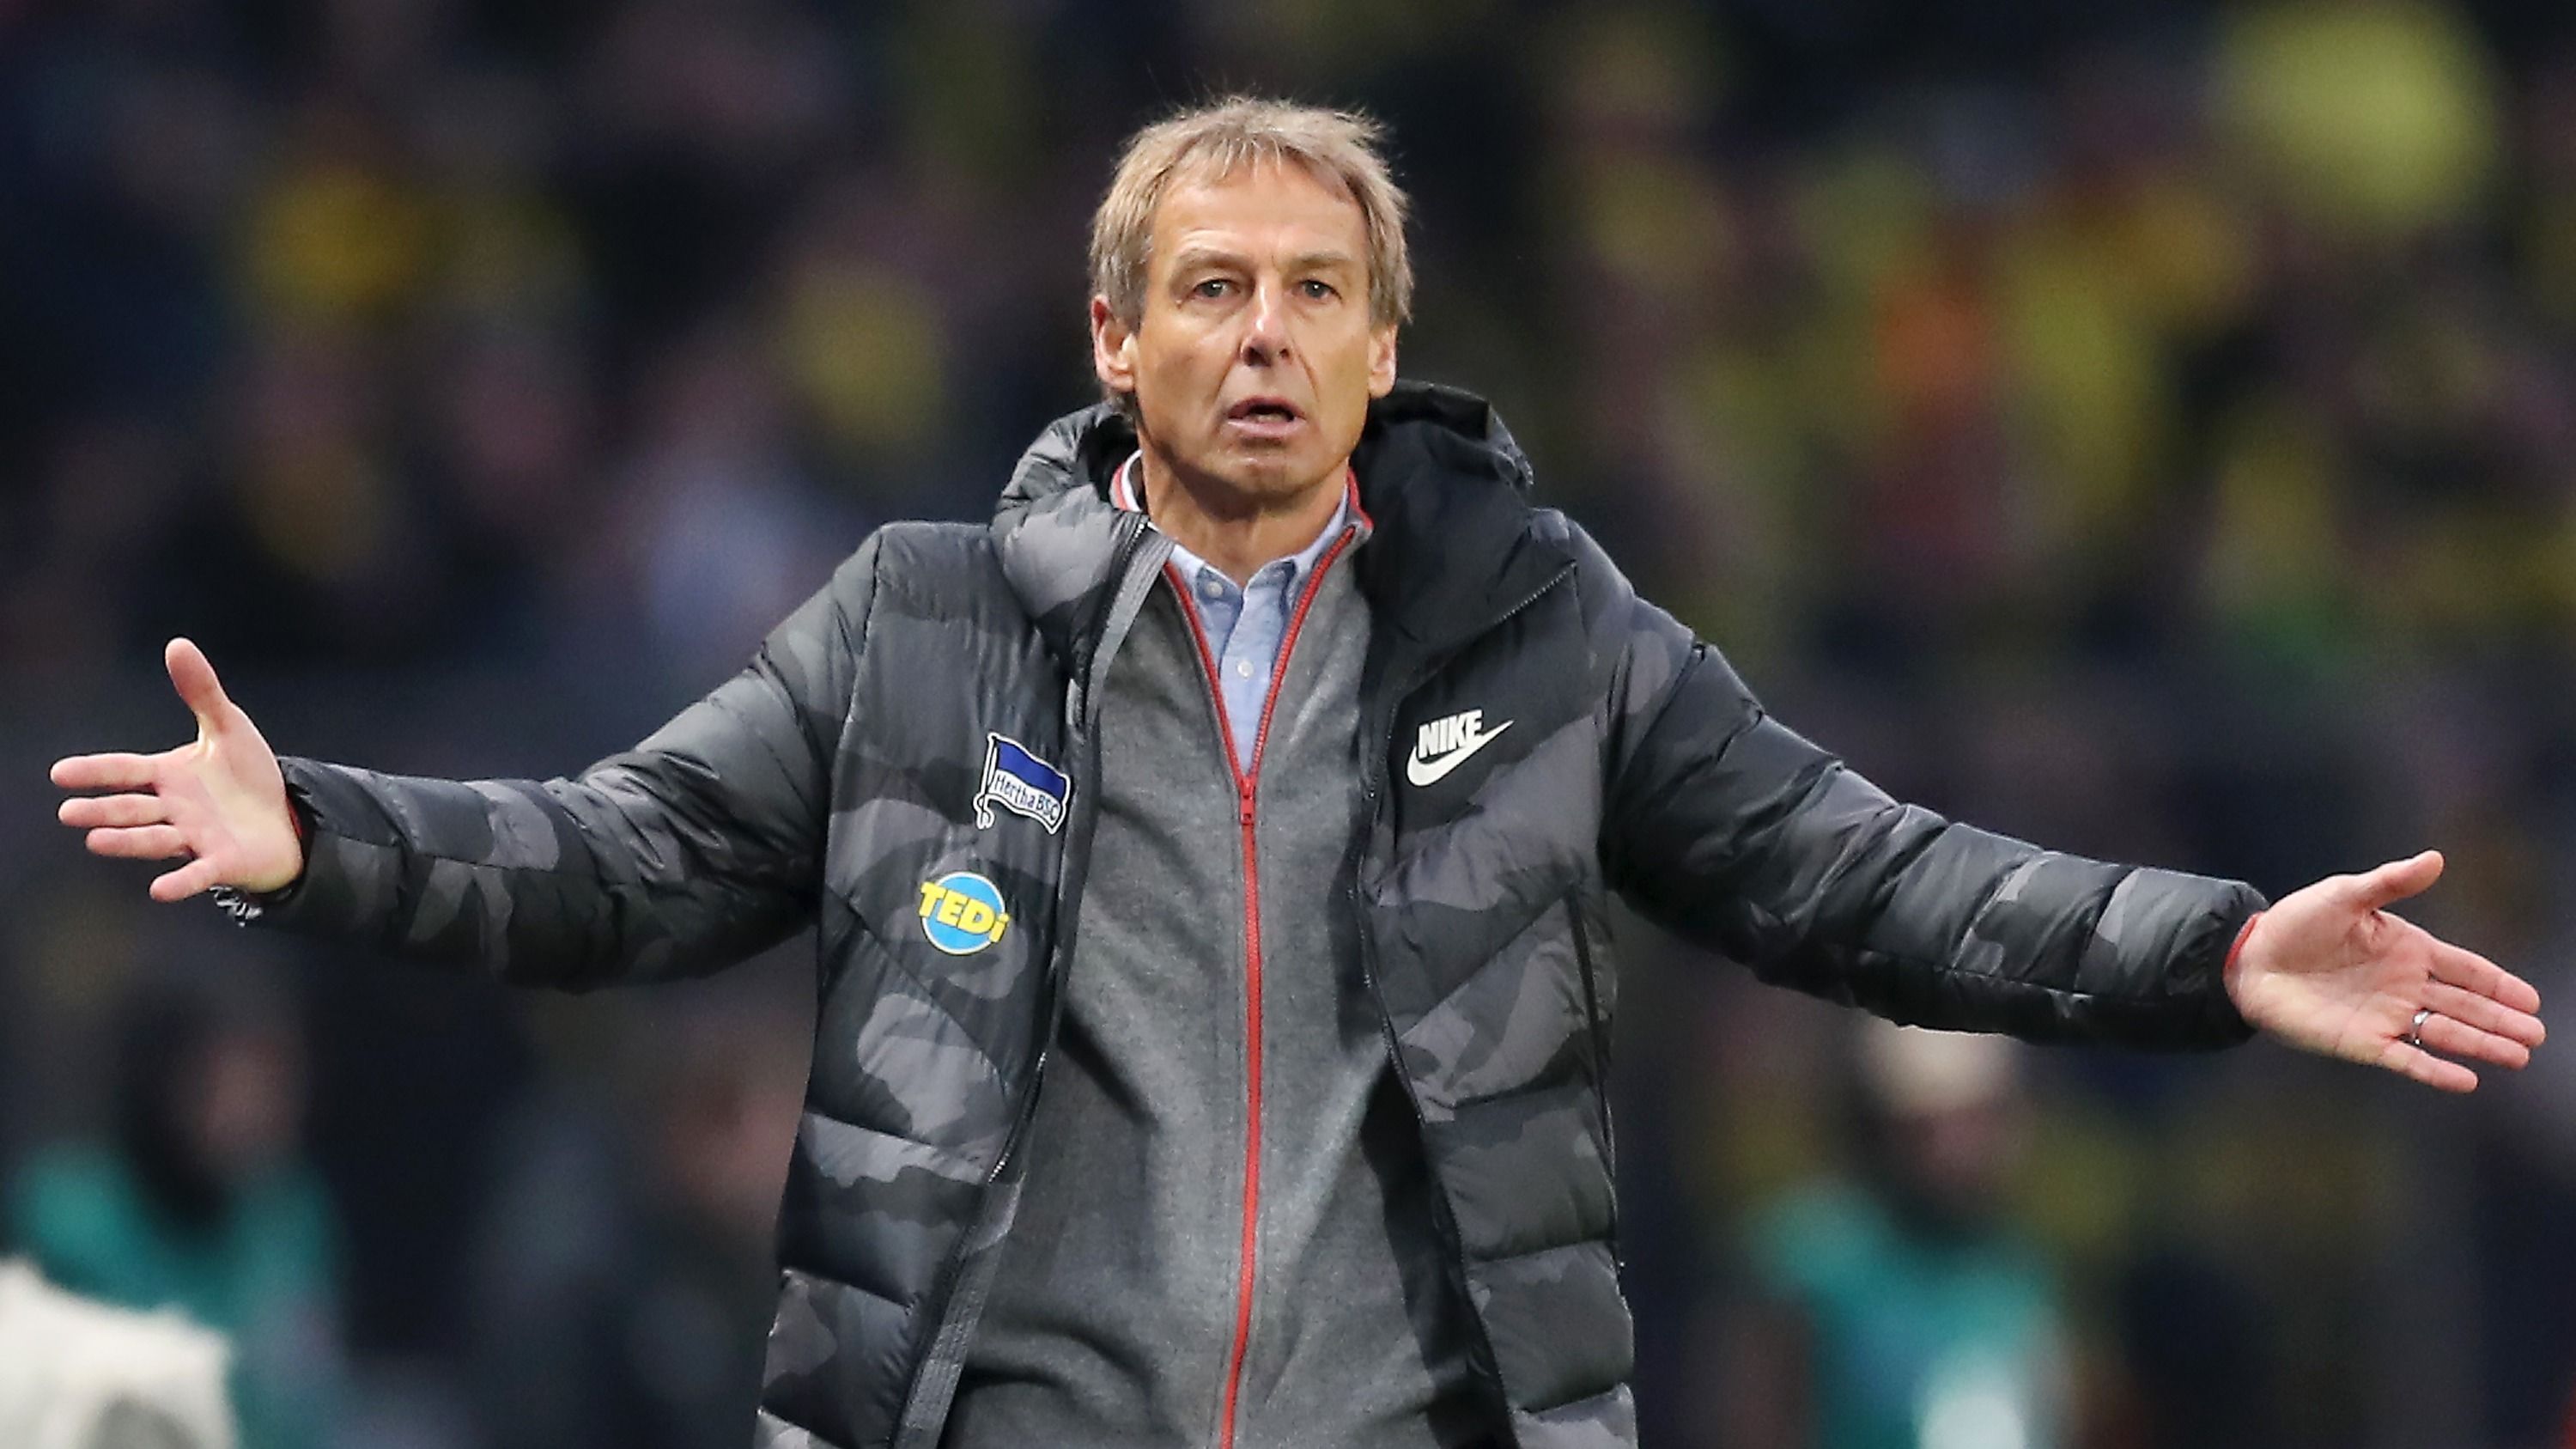 
                <strong>Erster Schock für den Hertha-Trainer</strong><br>
                In der 15. Minute dann der Schock: Jadon Sancho trifft zum 1:0 für den BVB. So hat sich Klinsmann sicher nicht den Start in seine erste Bundesliga-Partie als Hertha-Coach vorgestellt - sein Gesichtsausdruck spricht Bände.
              